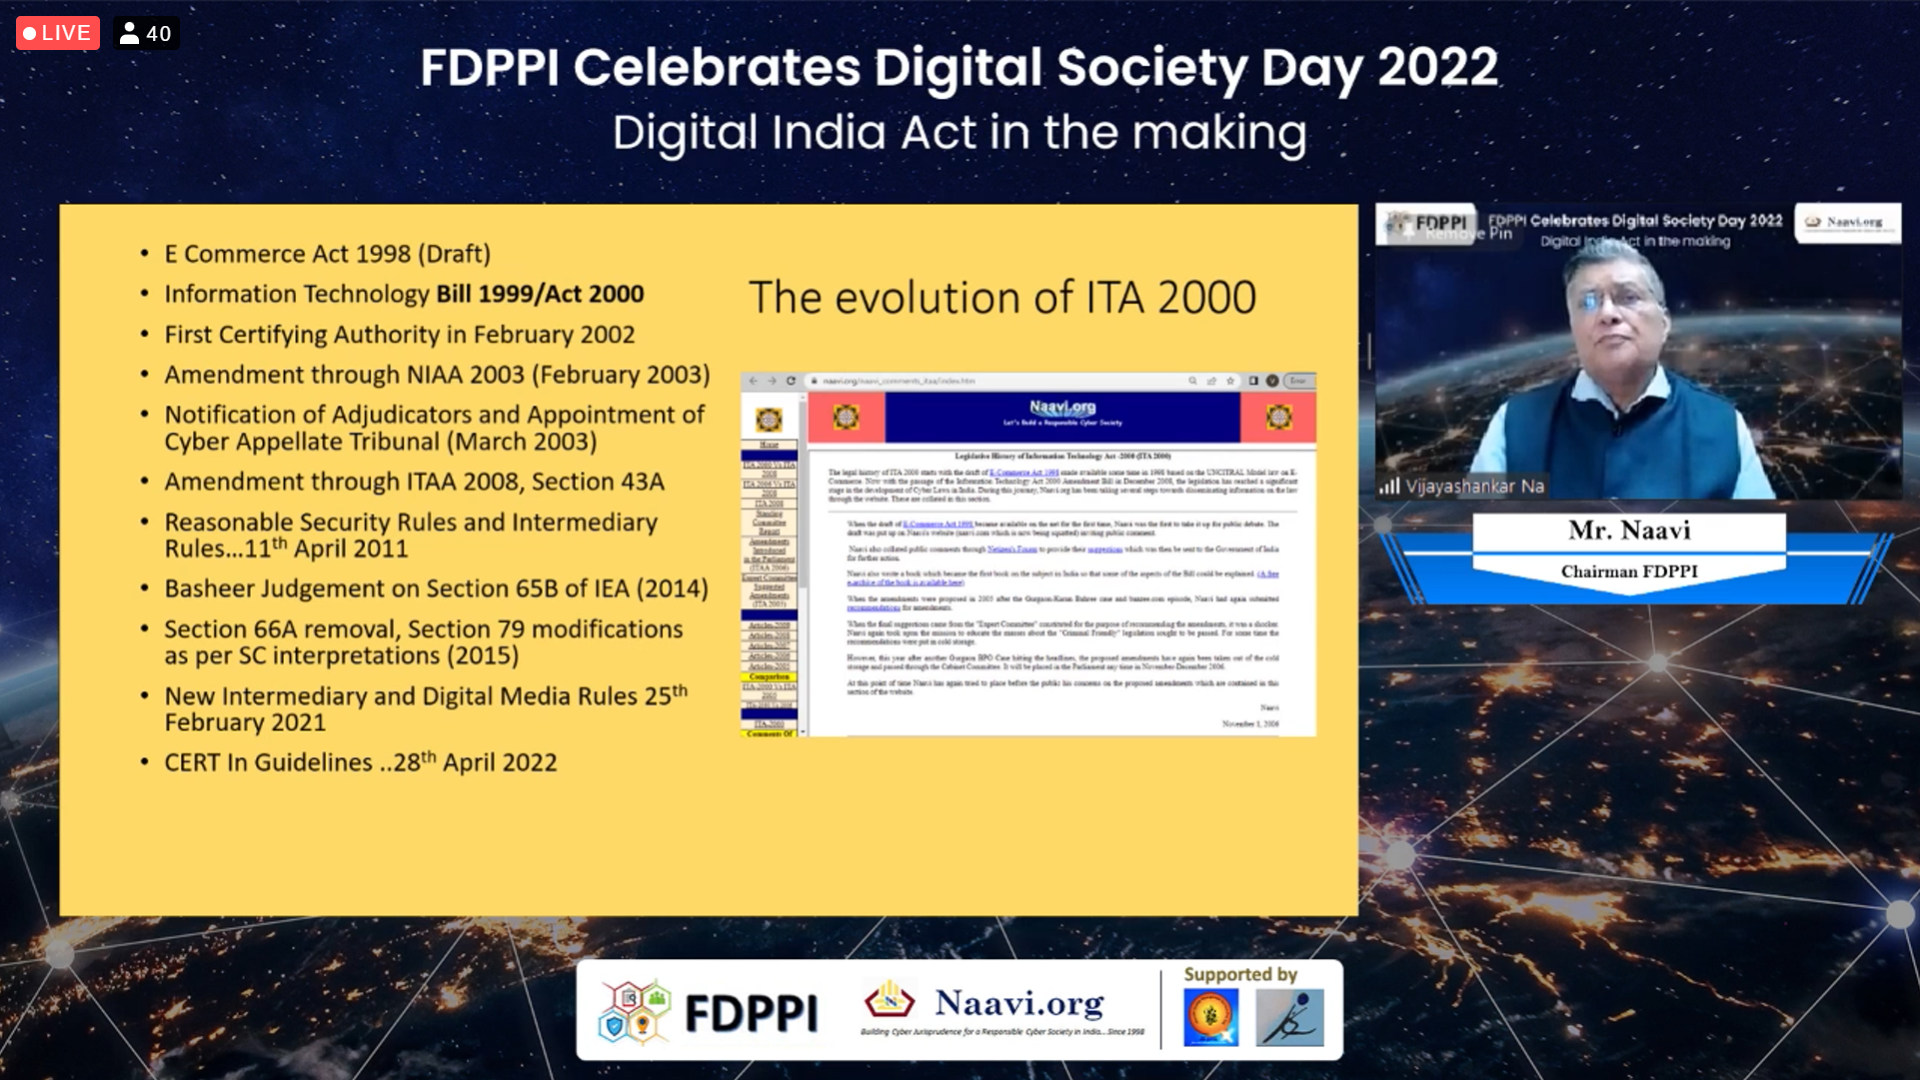 Digital Society Day Celebration